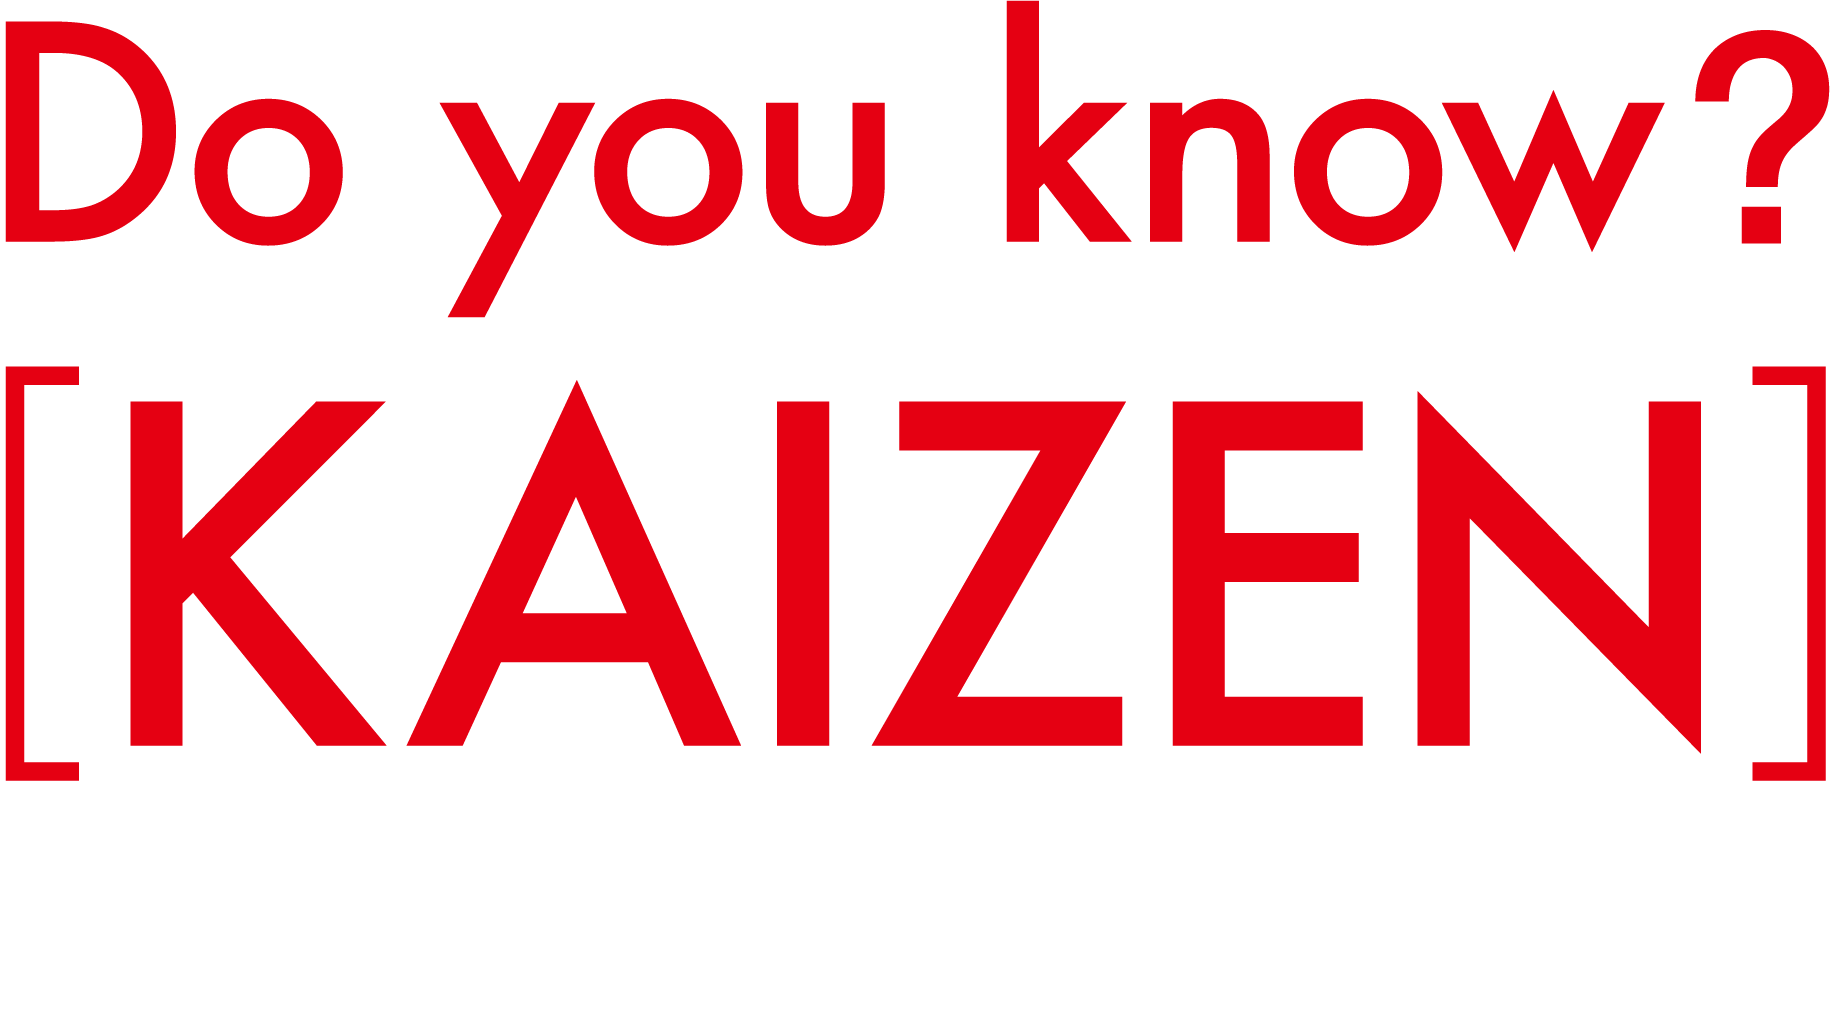 Do you know?kaizen トヨタ式カイゼンで、クルマのある豊かな暮らしの環境を整える。